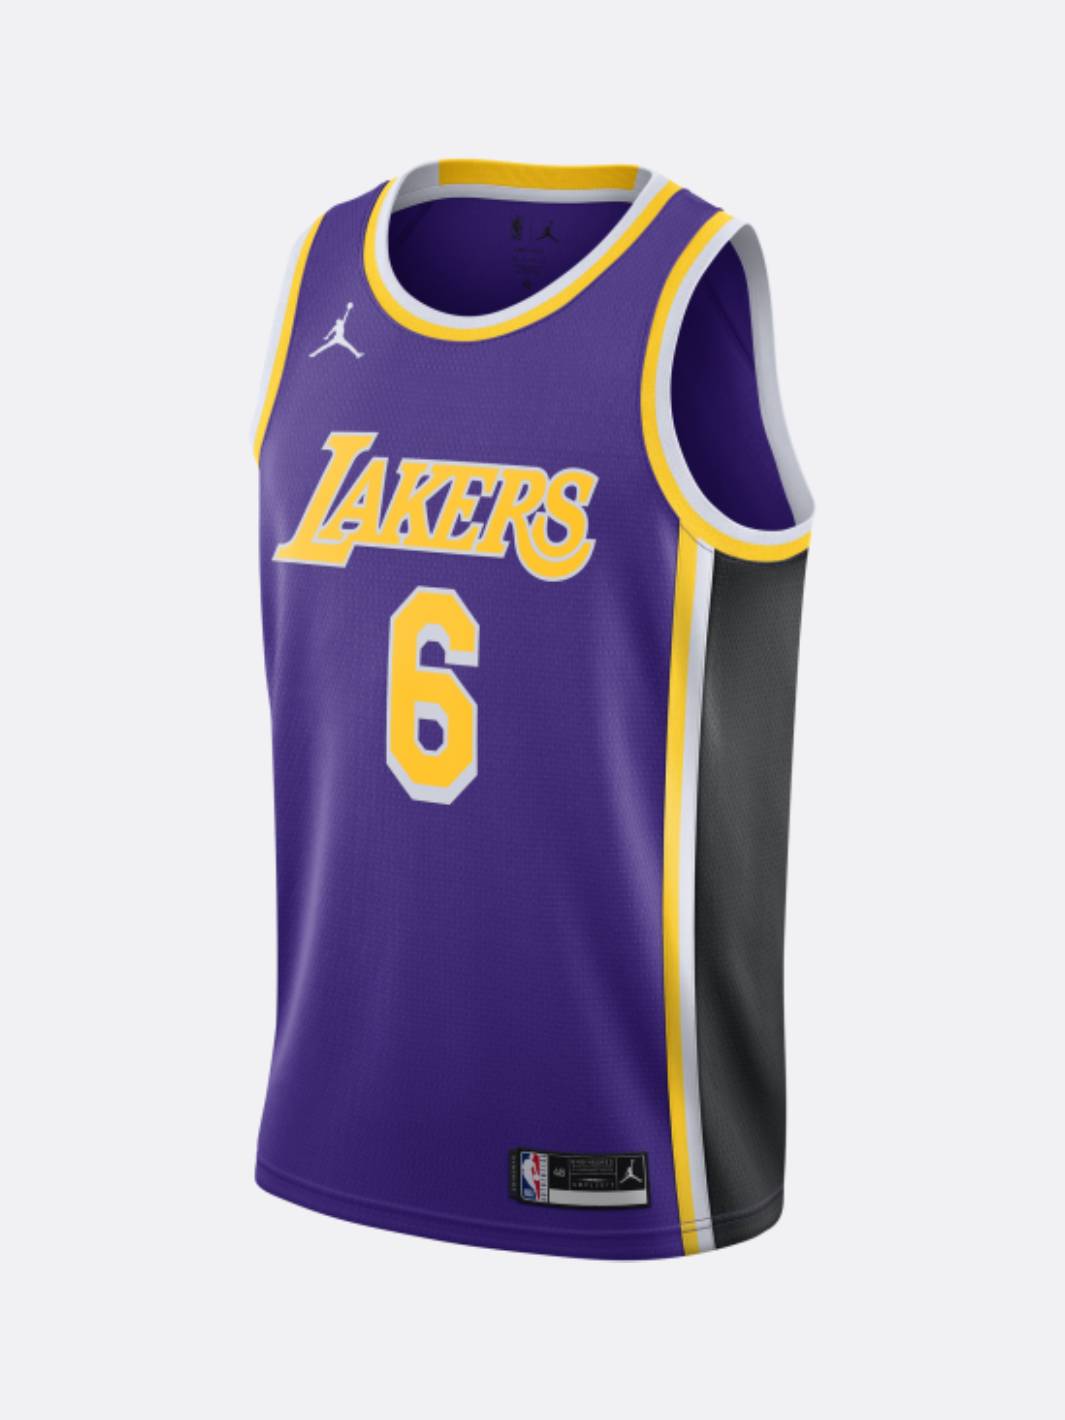 Nike - Men - Lebron James Lakers Swingman Jersey - Field Purple - Nohble